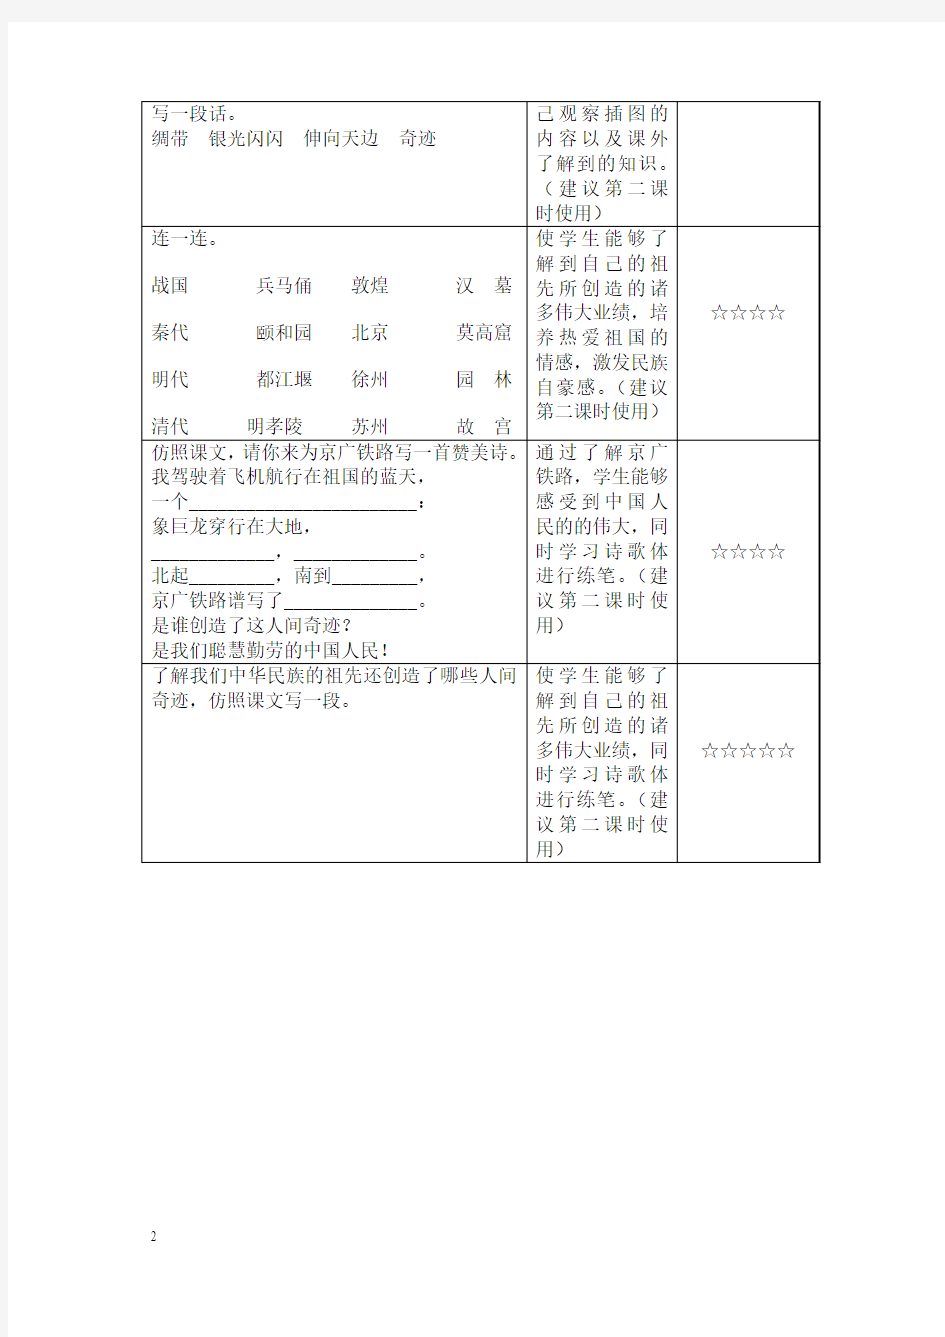 苏教版国标本小学语文三年级下册作业设计